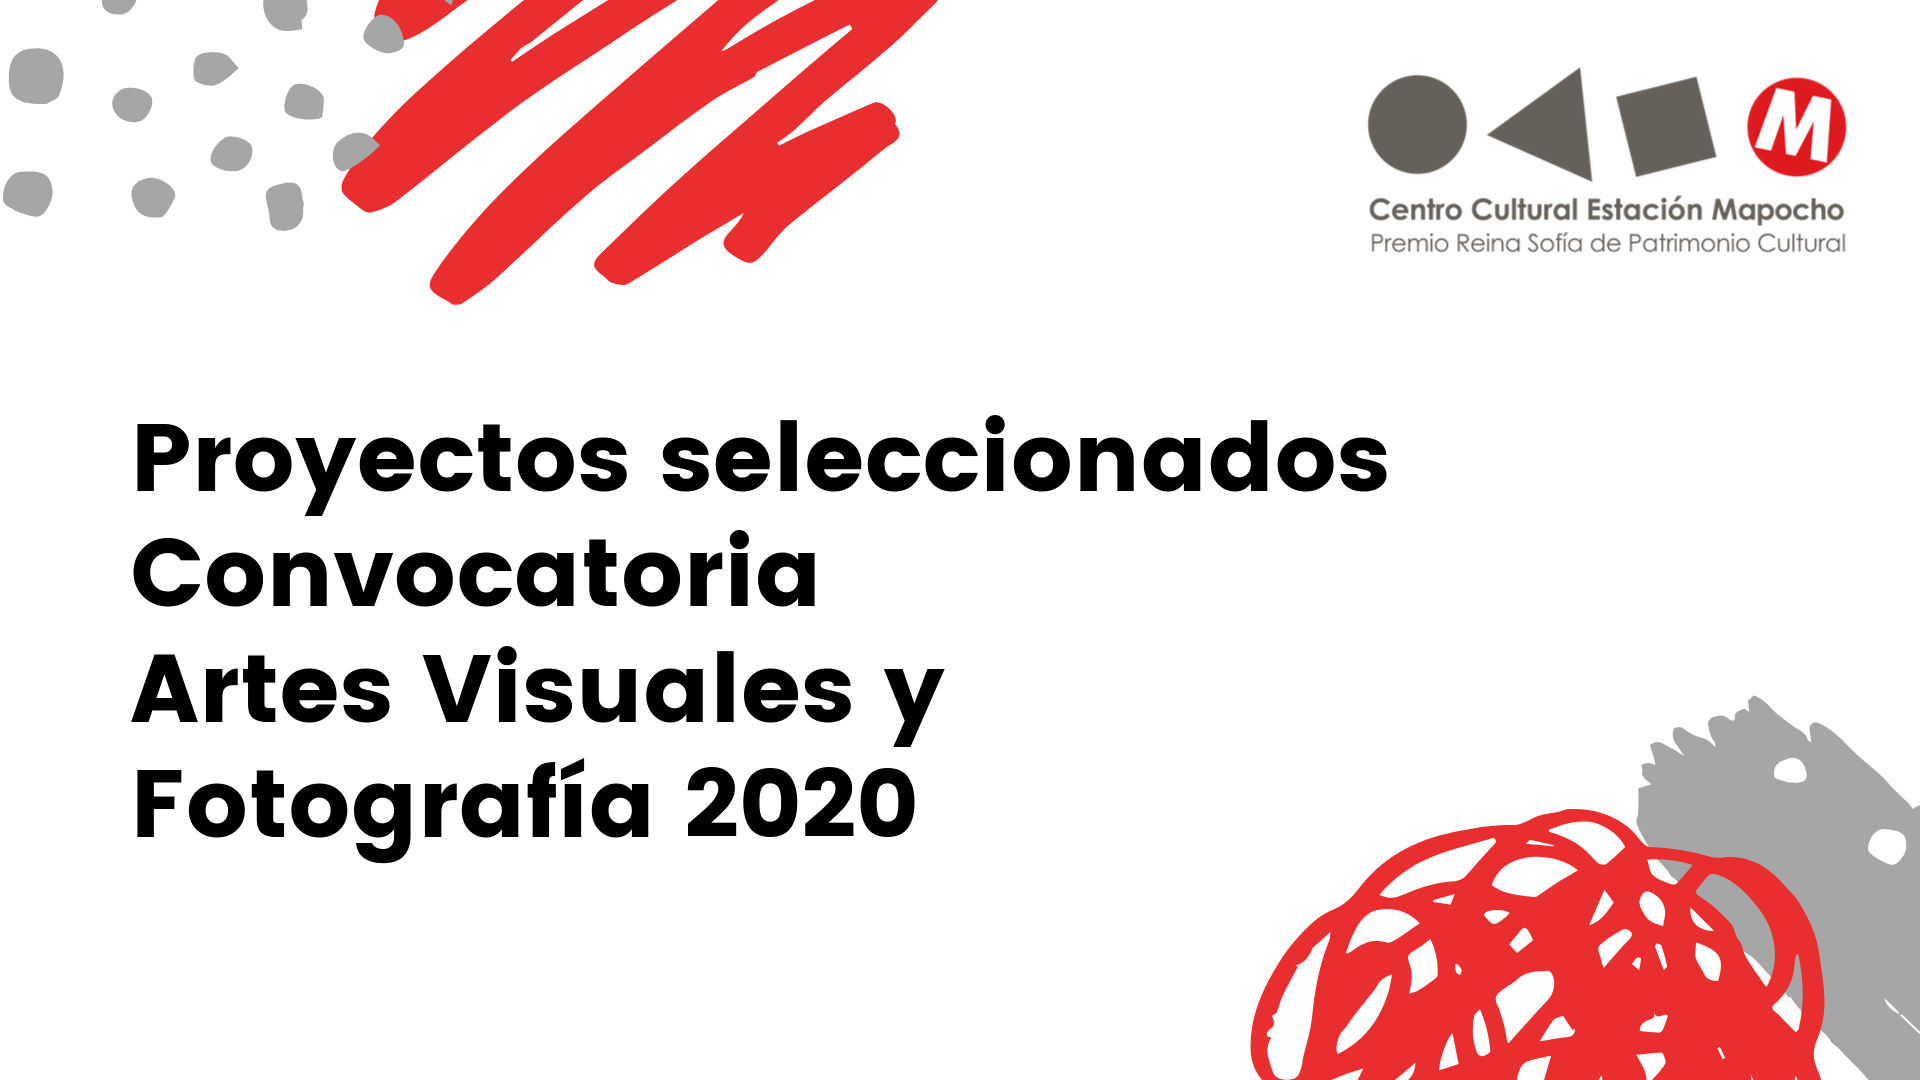 Proyectos seleccionados Convocatoria Artes Visuales y Fotografía 2020